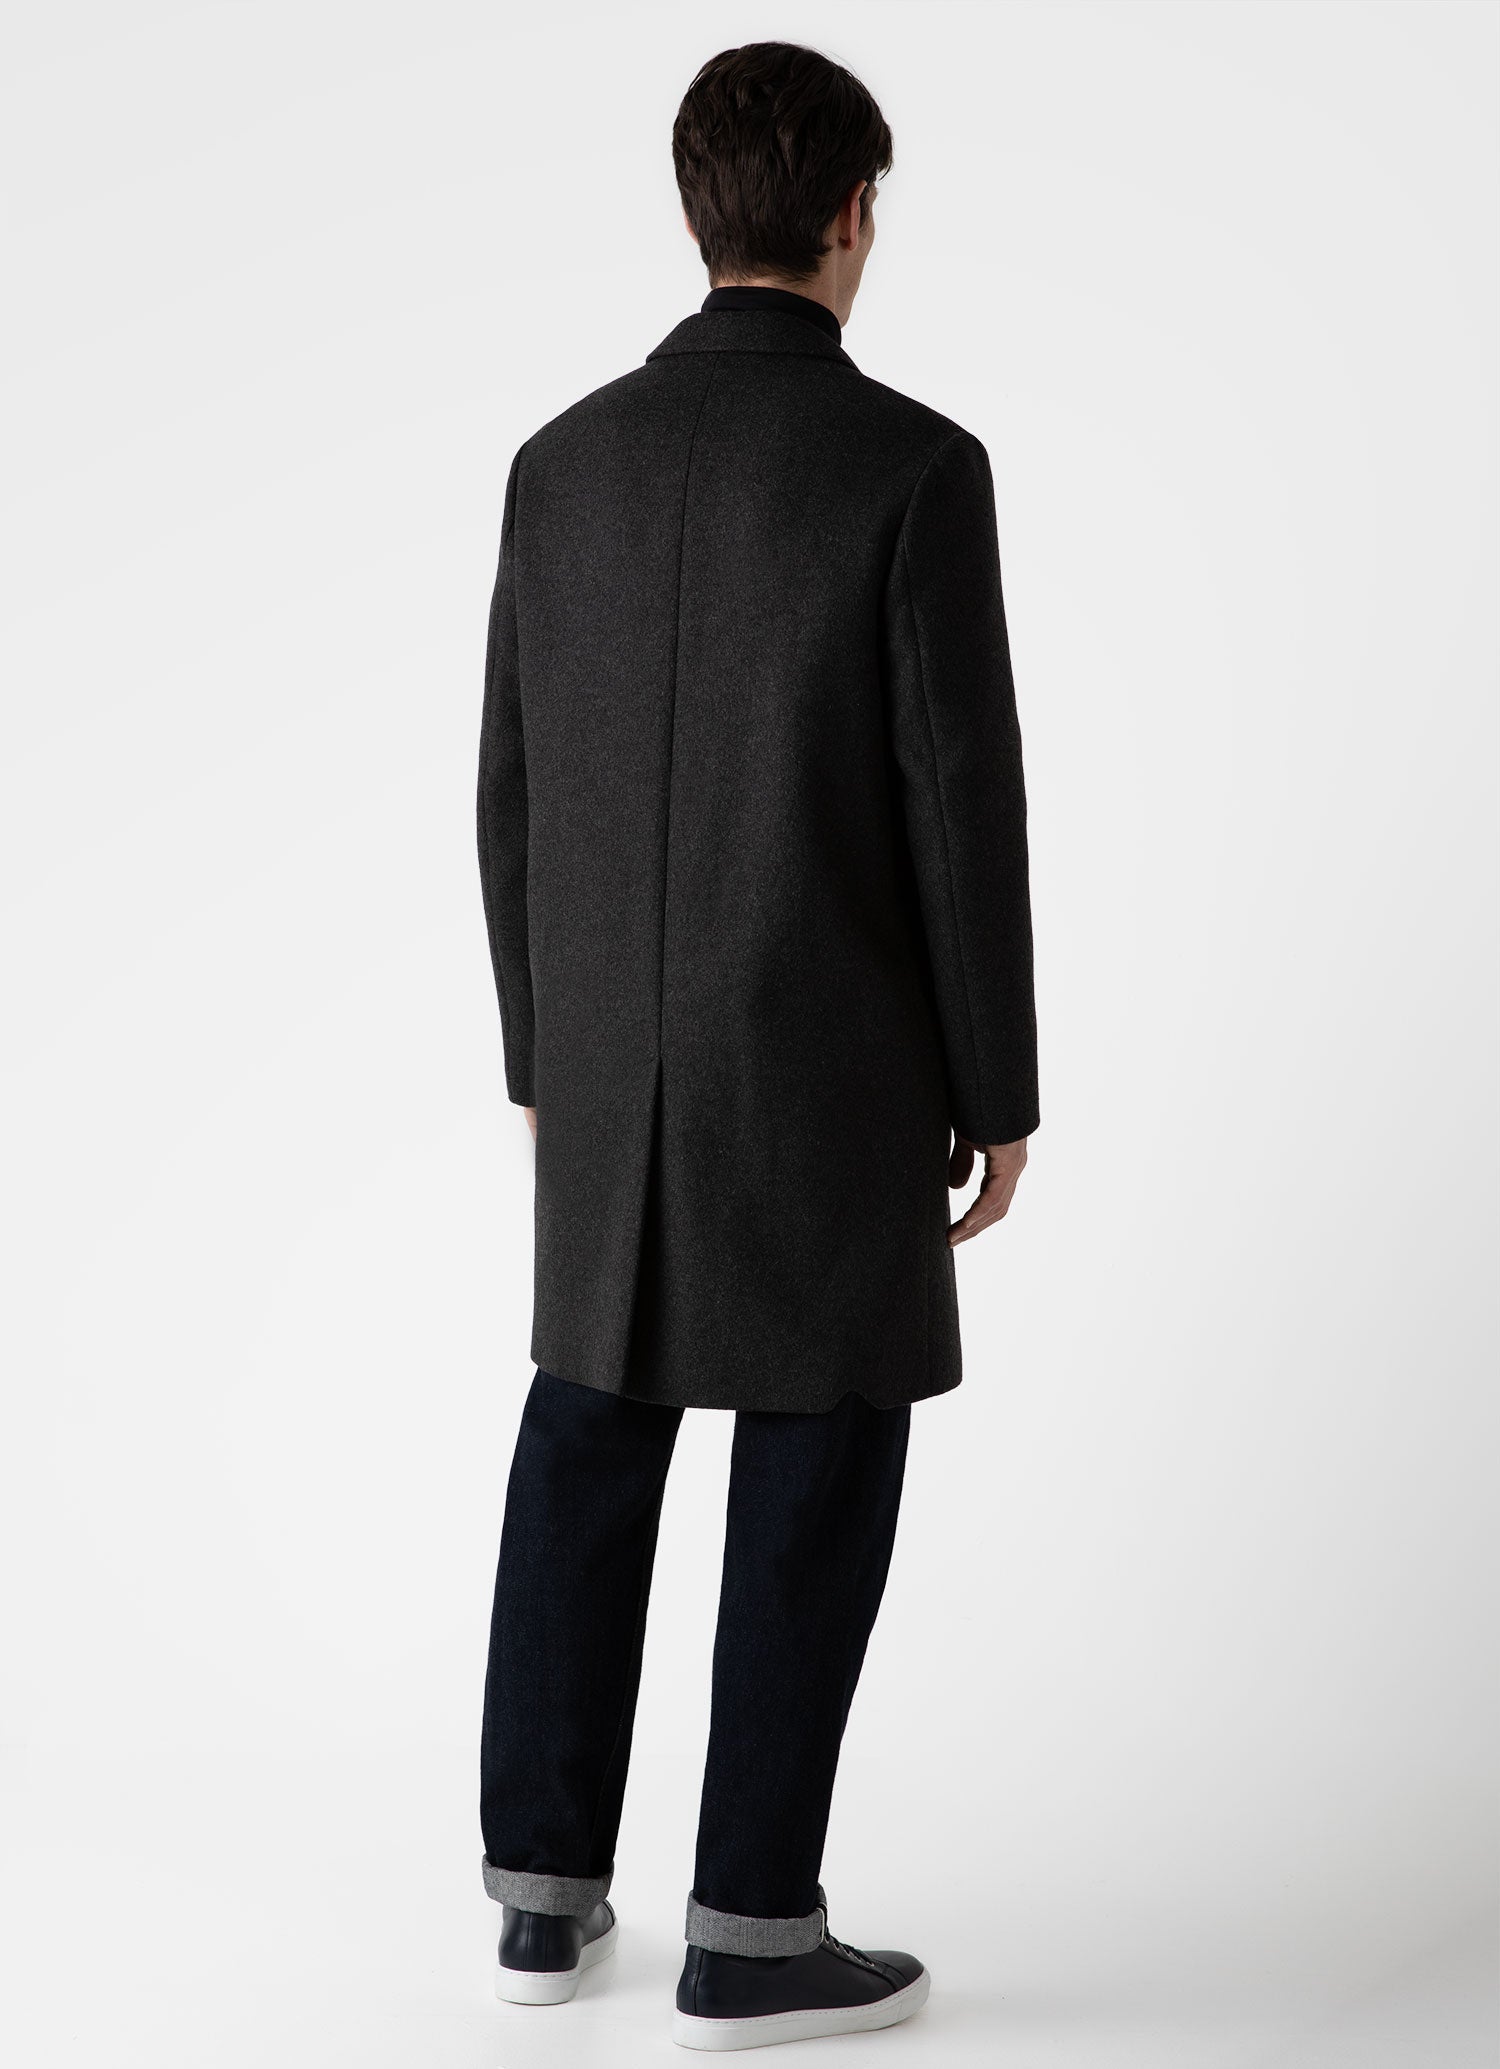 Men's Wool Cashmere Overcoat in Charcoal Melange